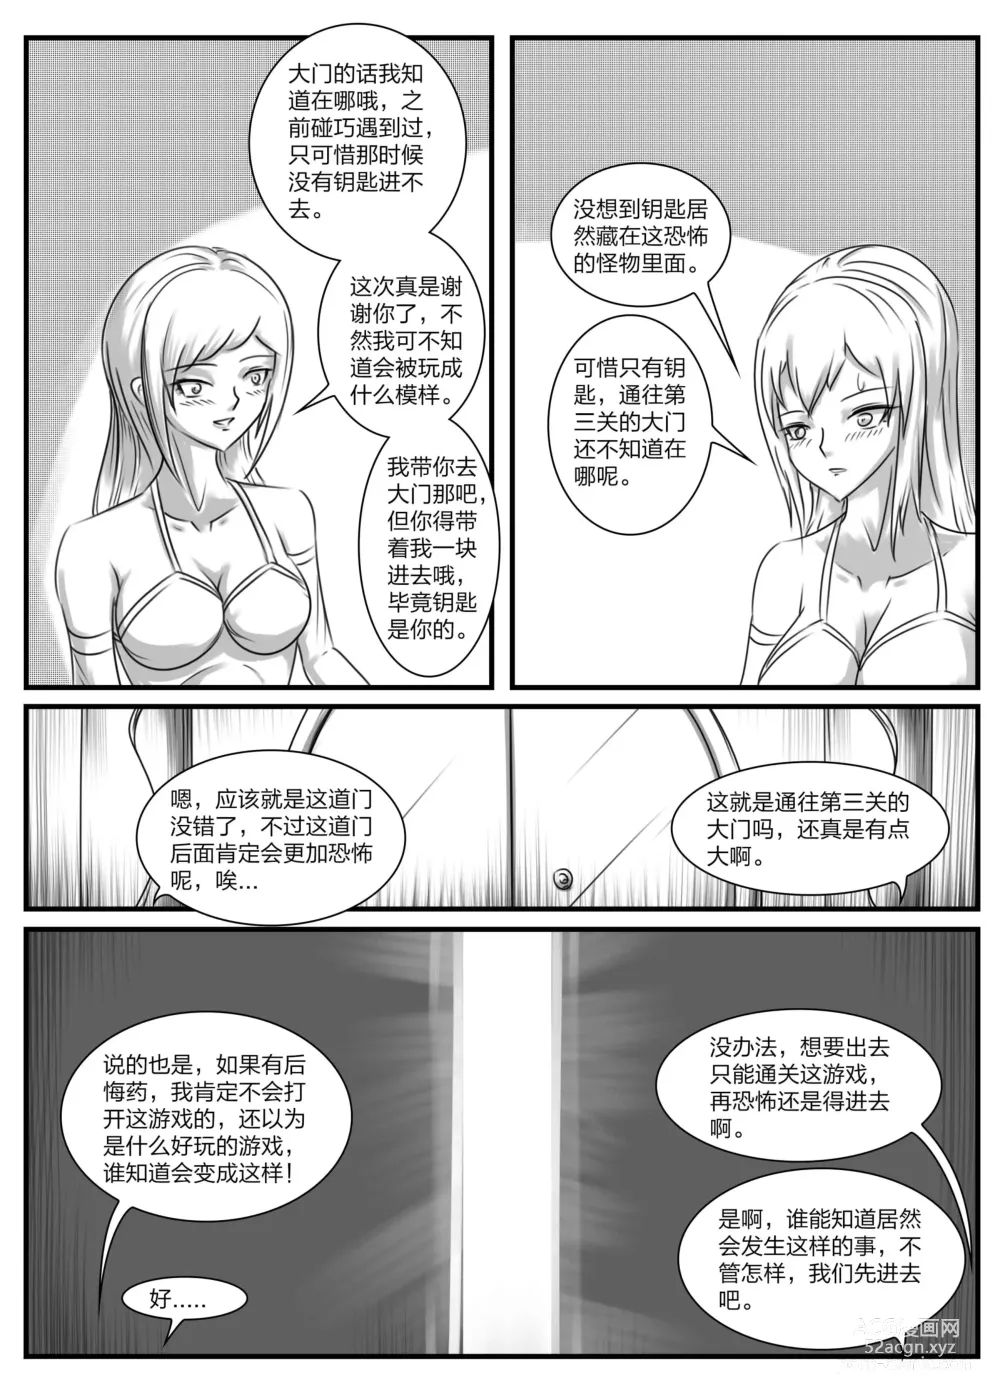 Page 19 of doujinshi 《被困游戏世界2》